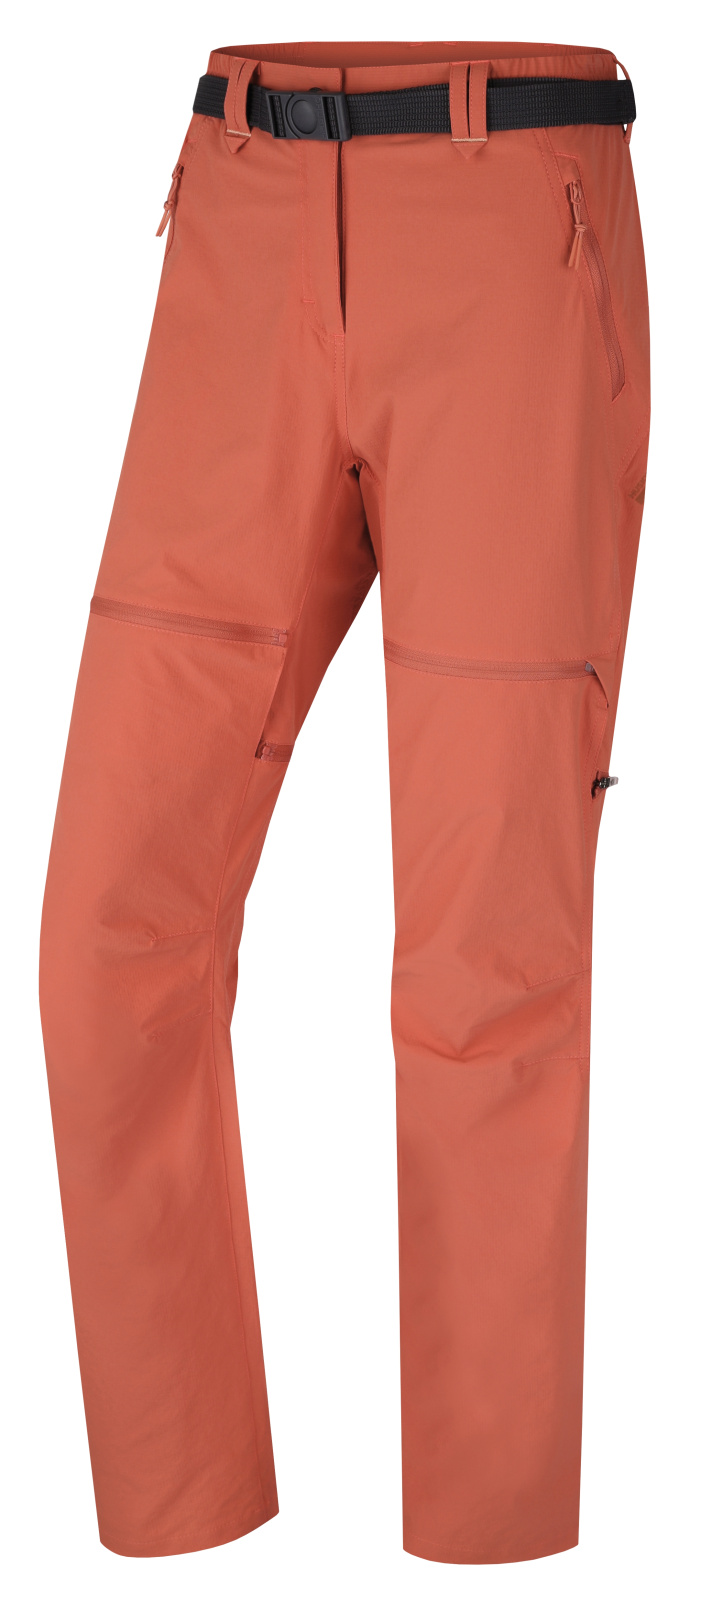 Husky Dámské outdoor kalhoty Pilon L faded orange Velikost: XS dámské kalhoty